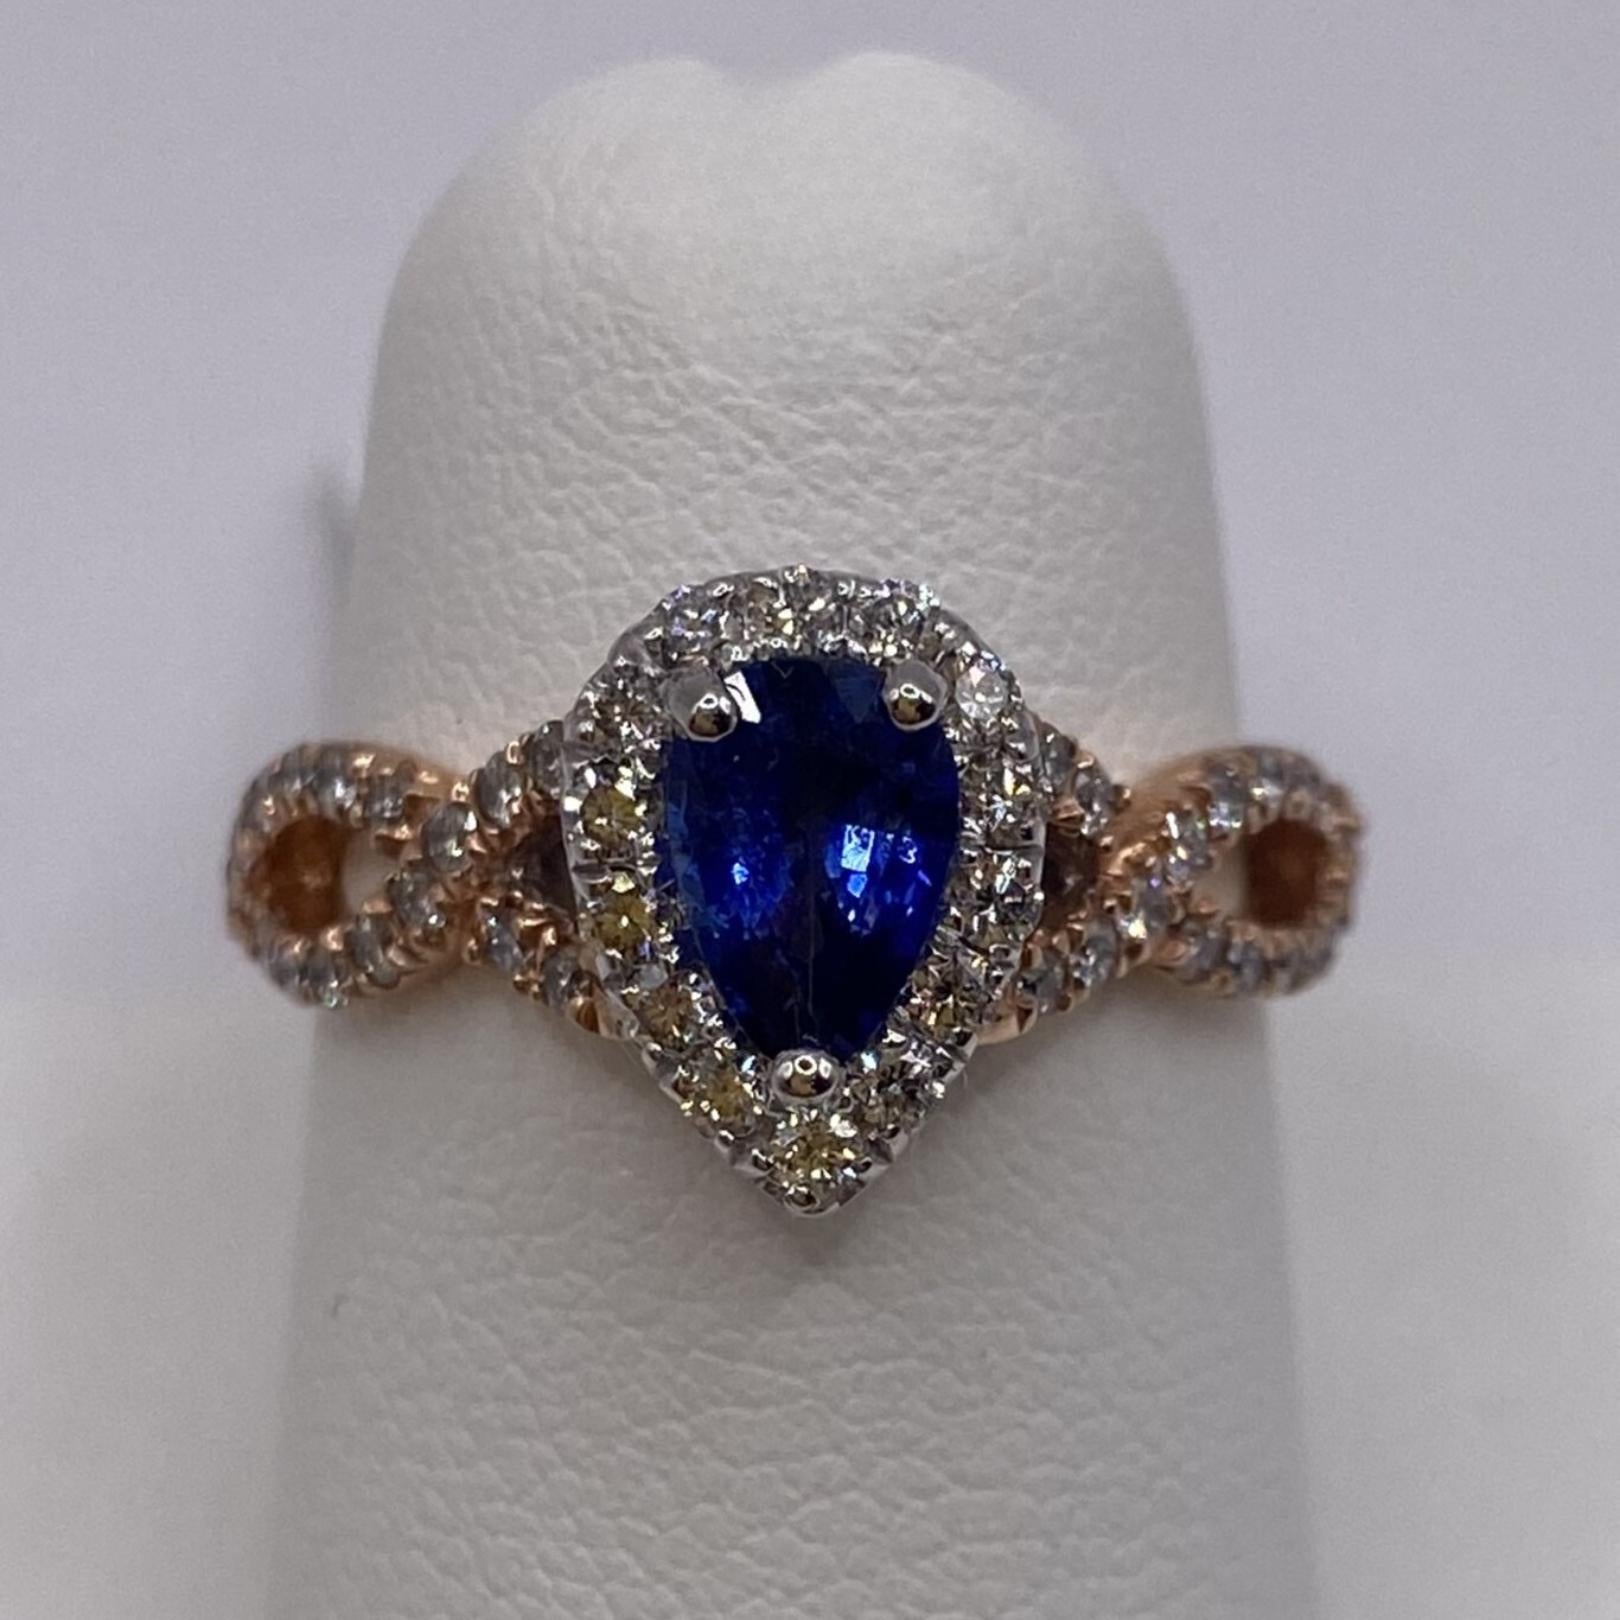 14KT Weiß & Rose Gold
Fingergröße: 6.5

Anzahl von birnenförmigen Saphiren: 1
Karatgewicht: 0,72ct
Steingröße: 7,0 x 4,5 mm

Anzahl der runden Diamanten: 46
Karatgewicht: 0,46ctw

Ein .72ct birnenförmiger, leuchtend blauer Saphir wird von einem mit